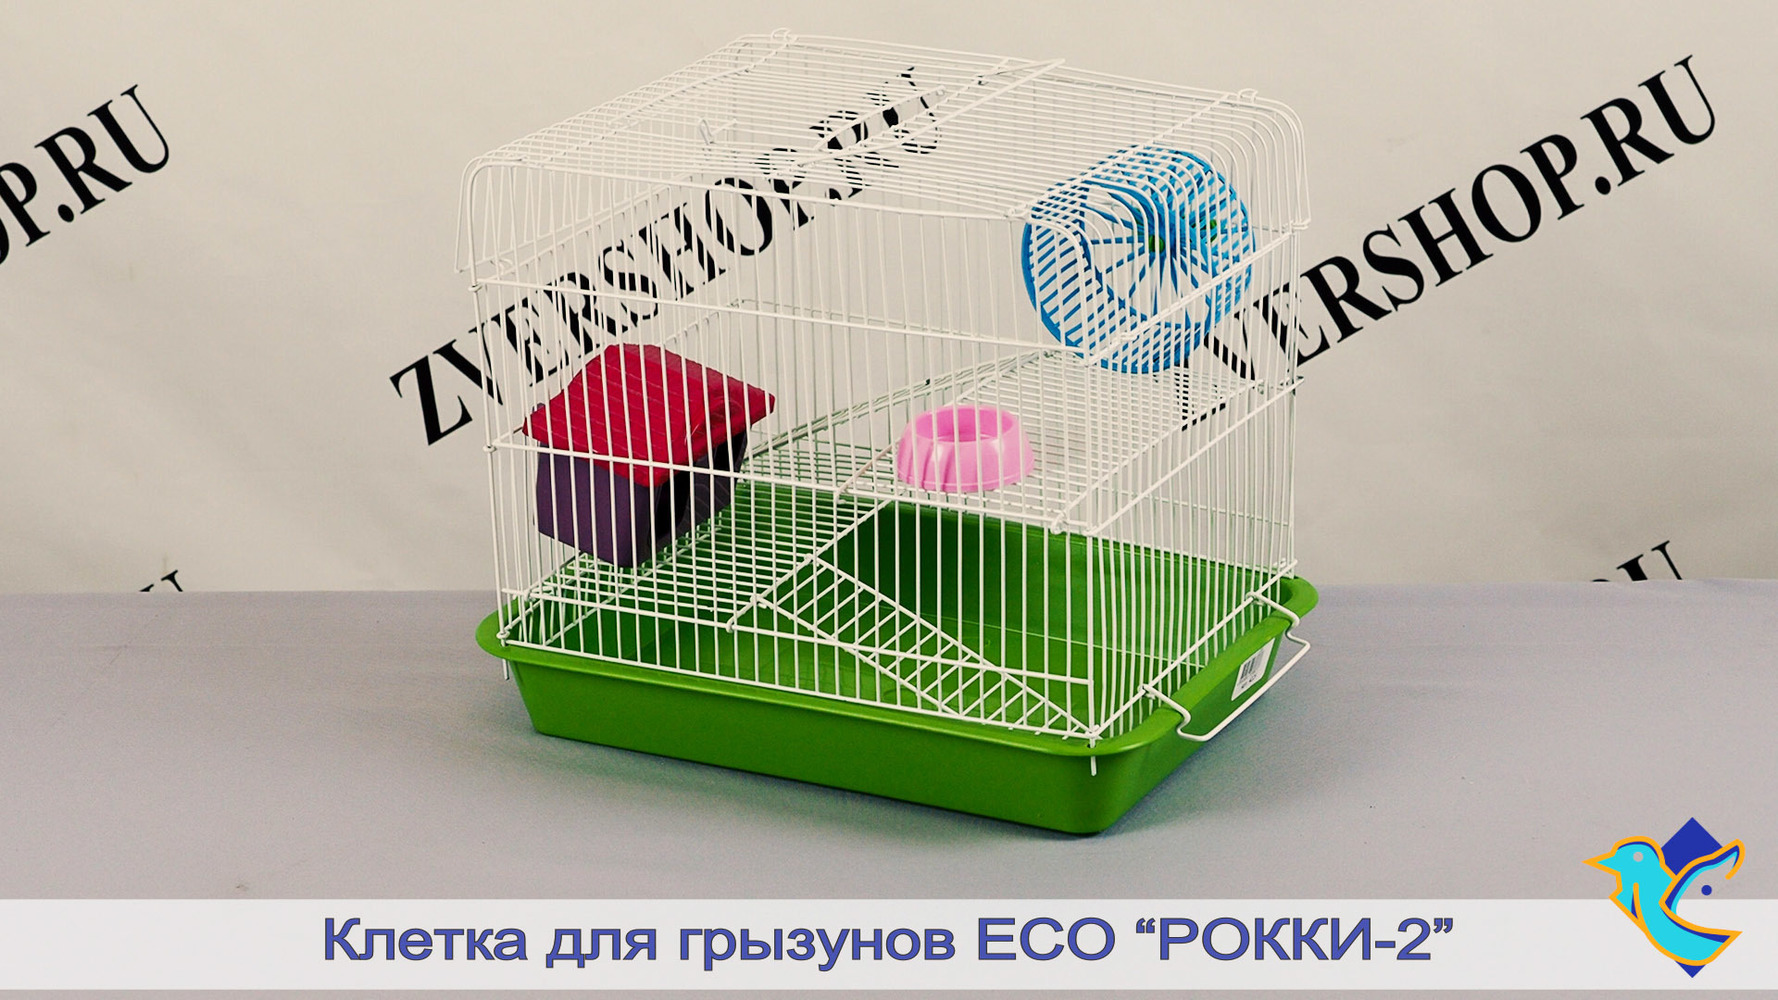 Фото Клетка Есо RP4226 разборная, для грызунов с 2-я этажами "Рокки-2", с наполнением 